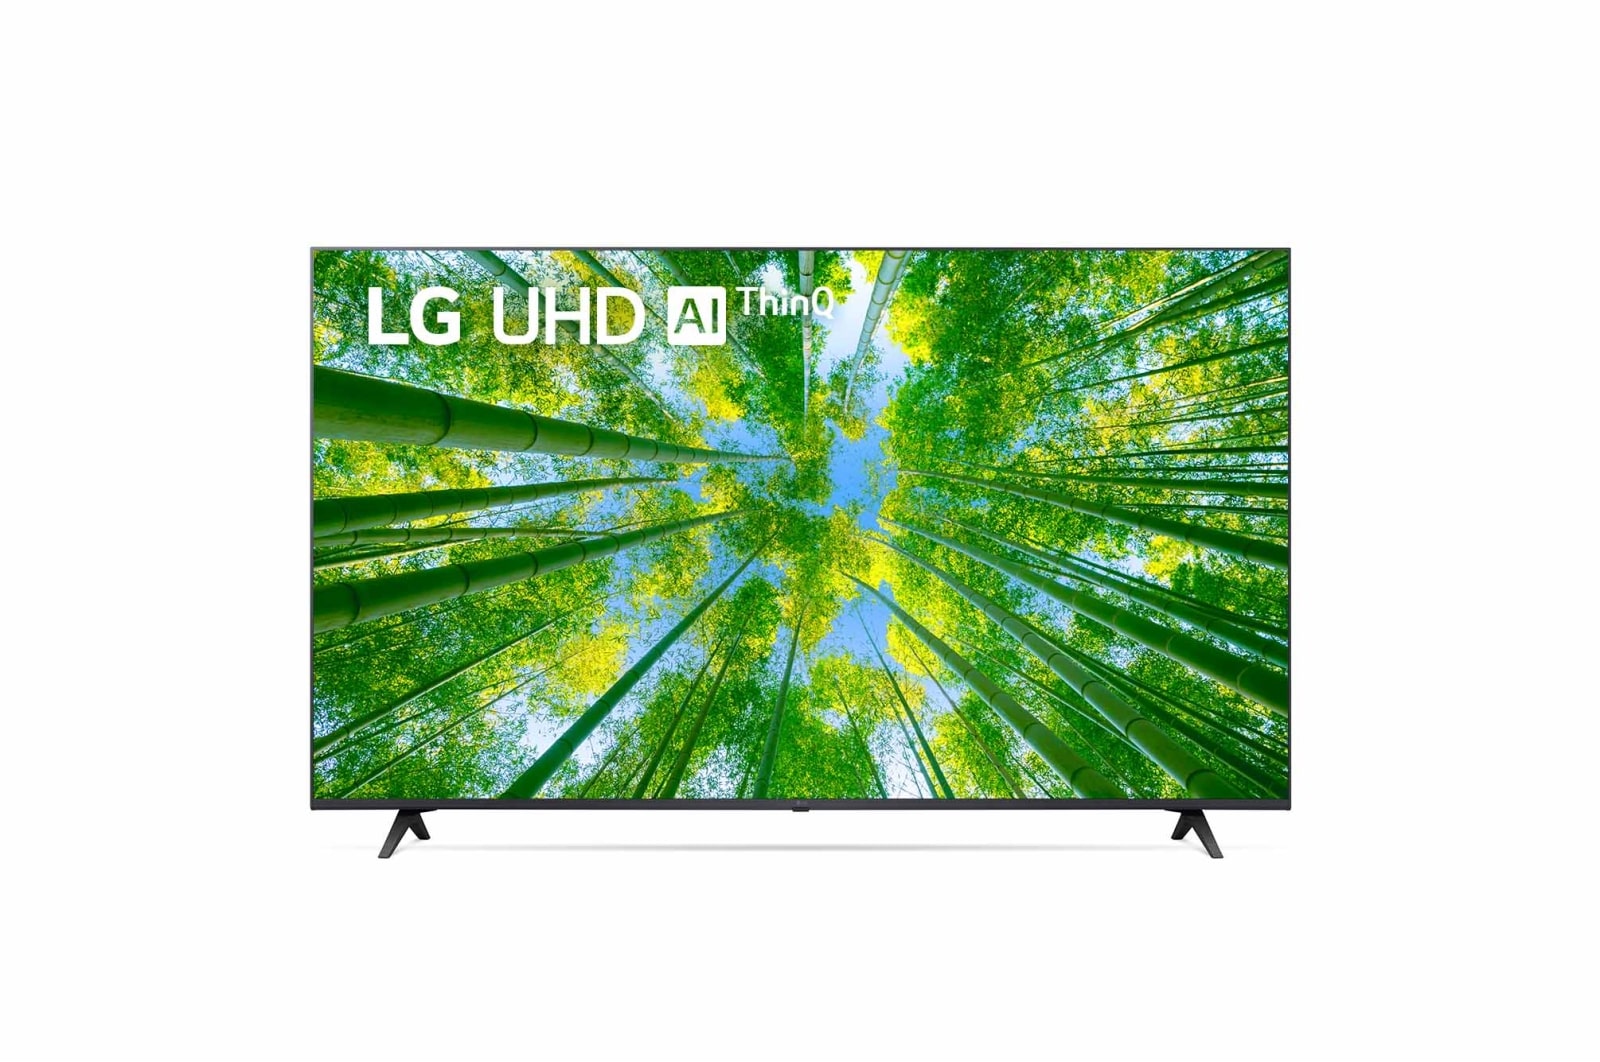 LG UHD TV UQ80 55 inch 4K Smart TV | Magic Remote | Ultra HD 4K resolution | AI ThinQ, 55UQ8050PSB